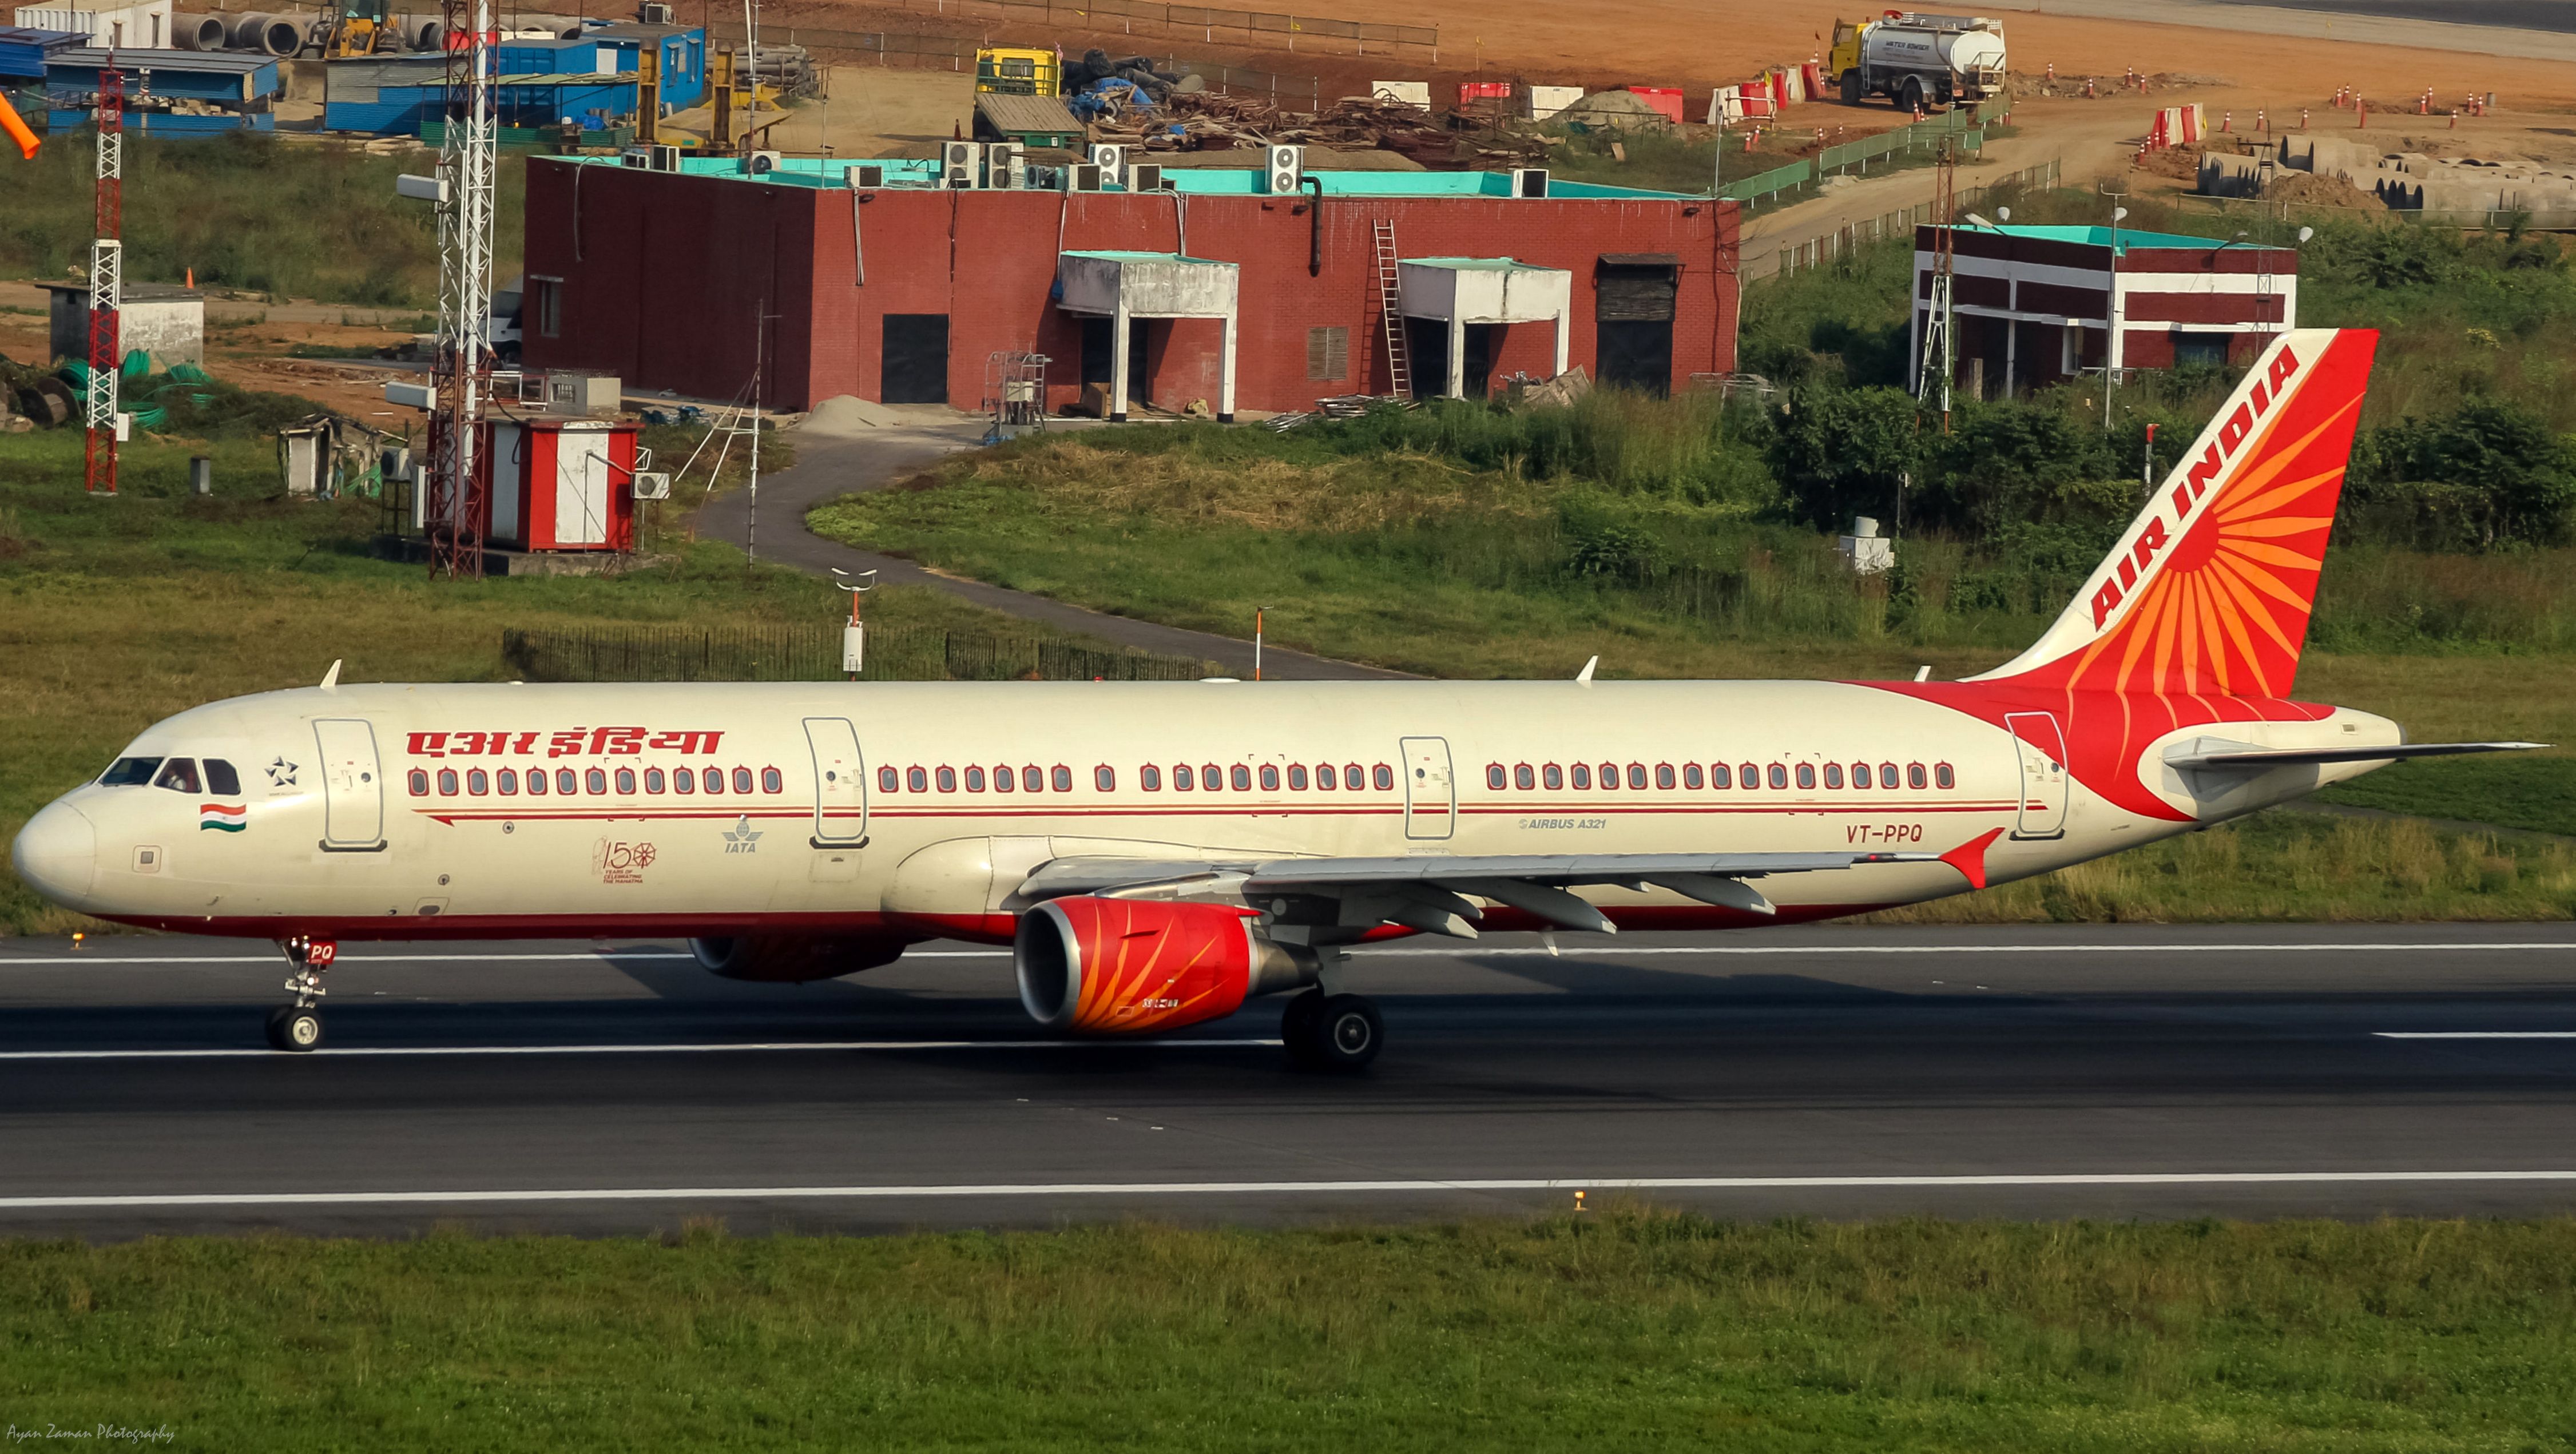 VT-PPQ_-_Air_India_-_Airbus_A321-211_-_MSN_4009_-_VGHS